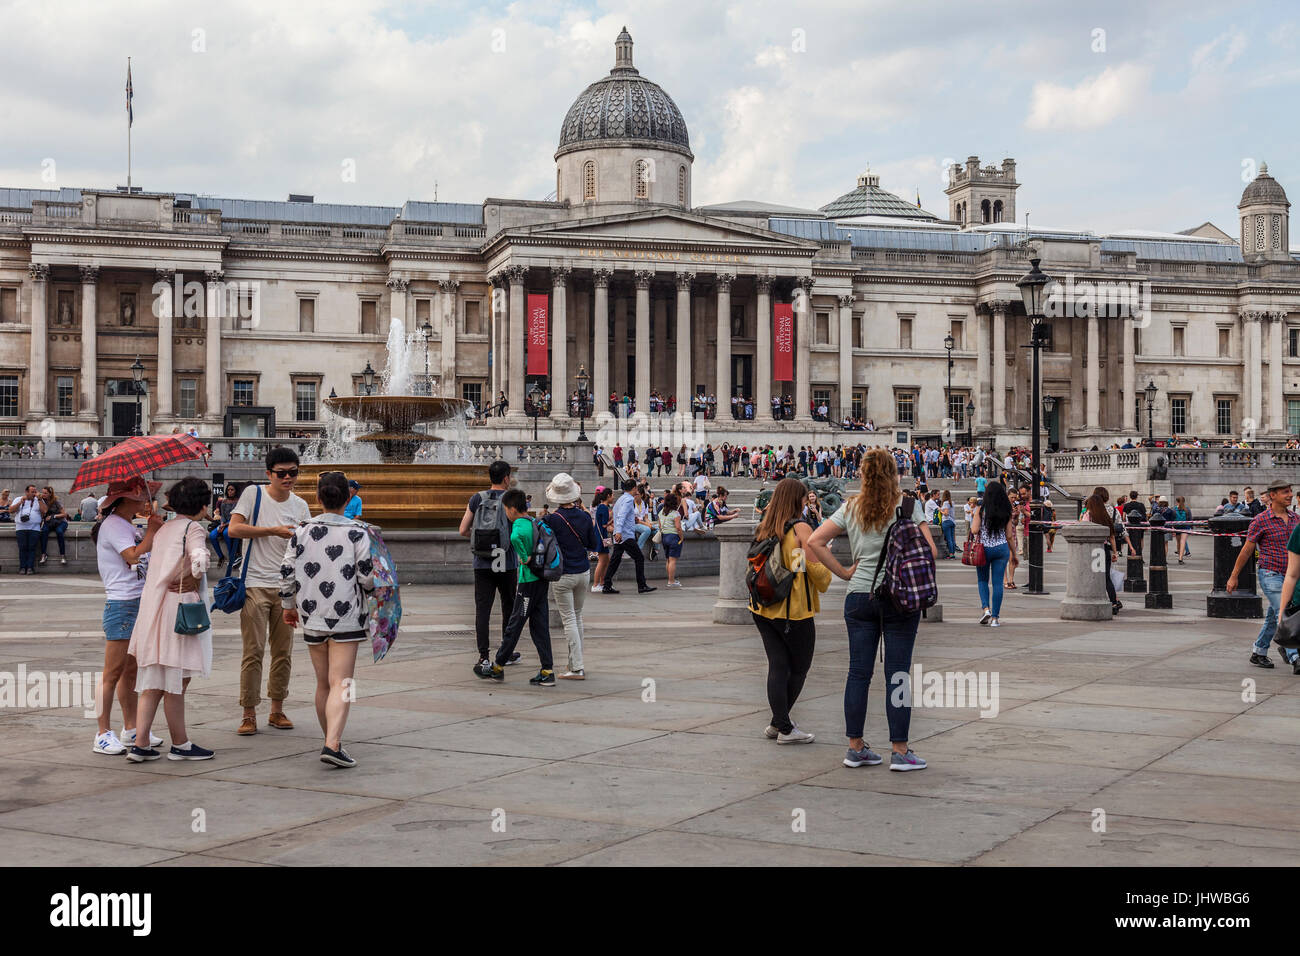 Los turistas y lugareños de pie y sentado fuera de la Galería Nacional en Trafalgar Square, Londres, relajarse, charlar, comprobación de teléfonos, teniendo photog Foto de stock